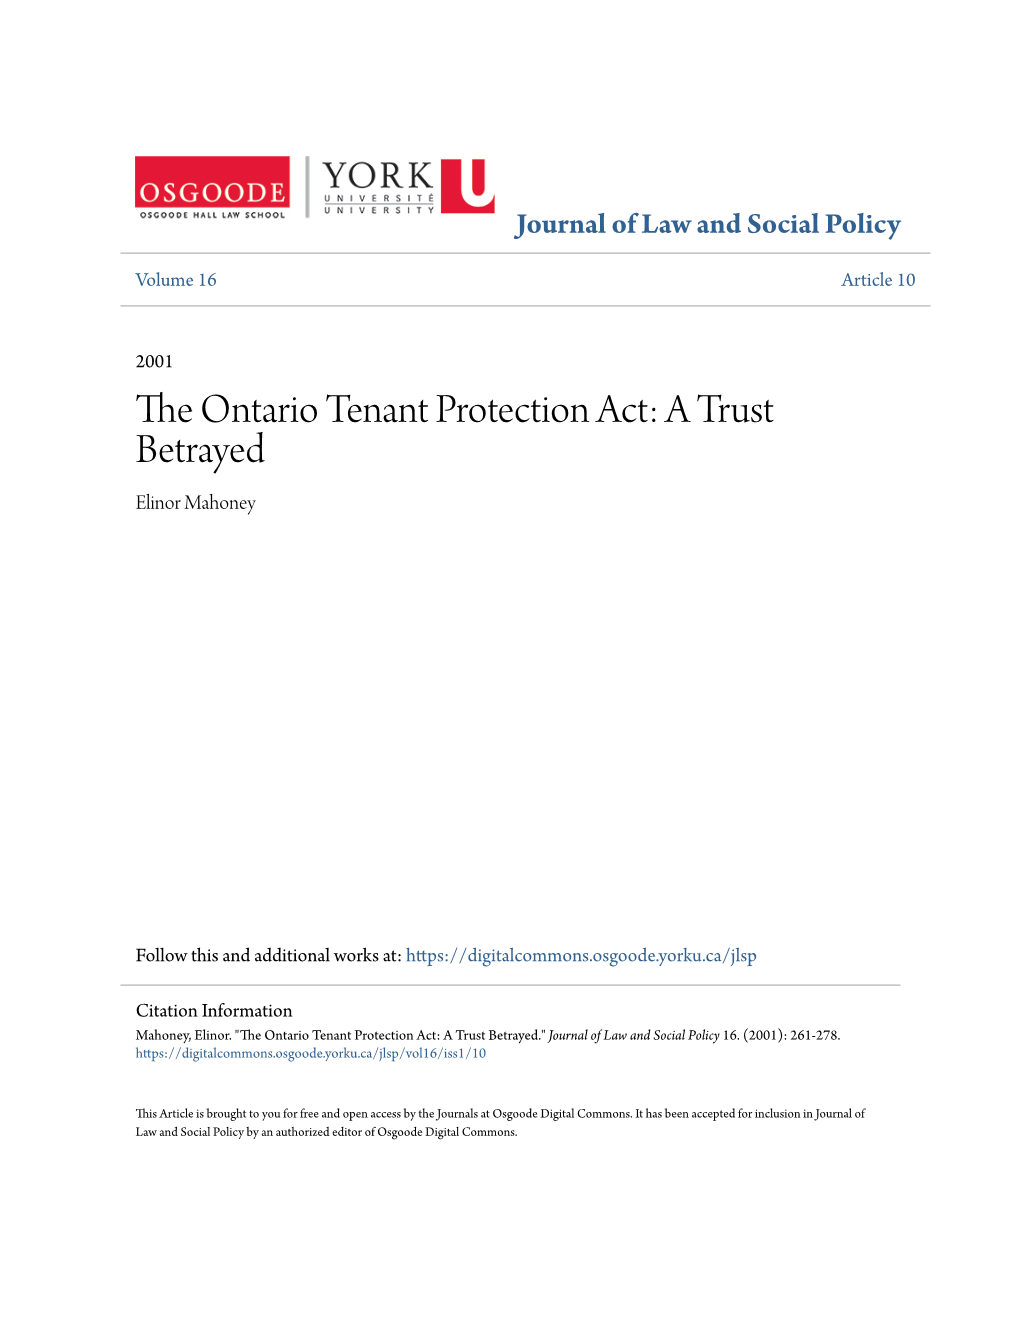 The Ontario Tenant Protection Act: a Trust Betrayed Elinor Mahoney